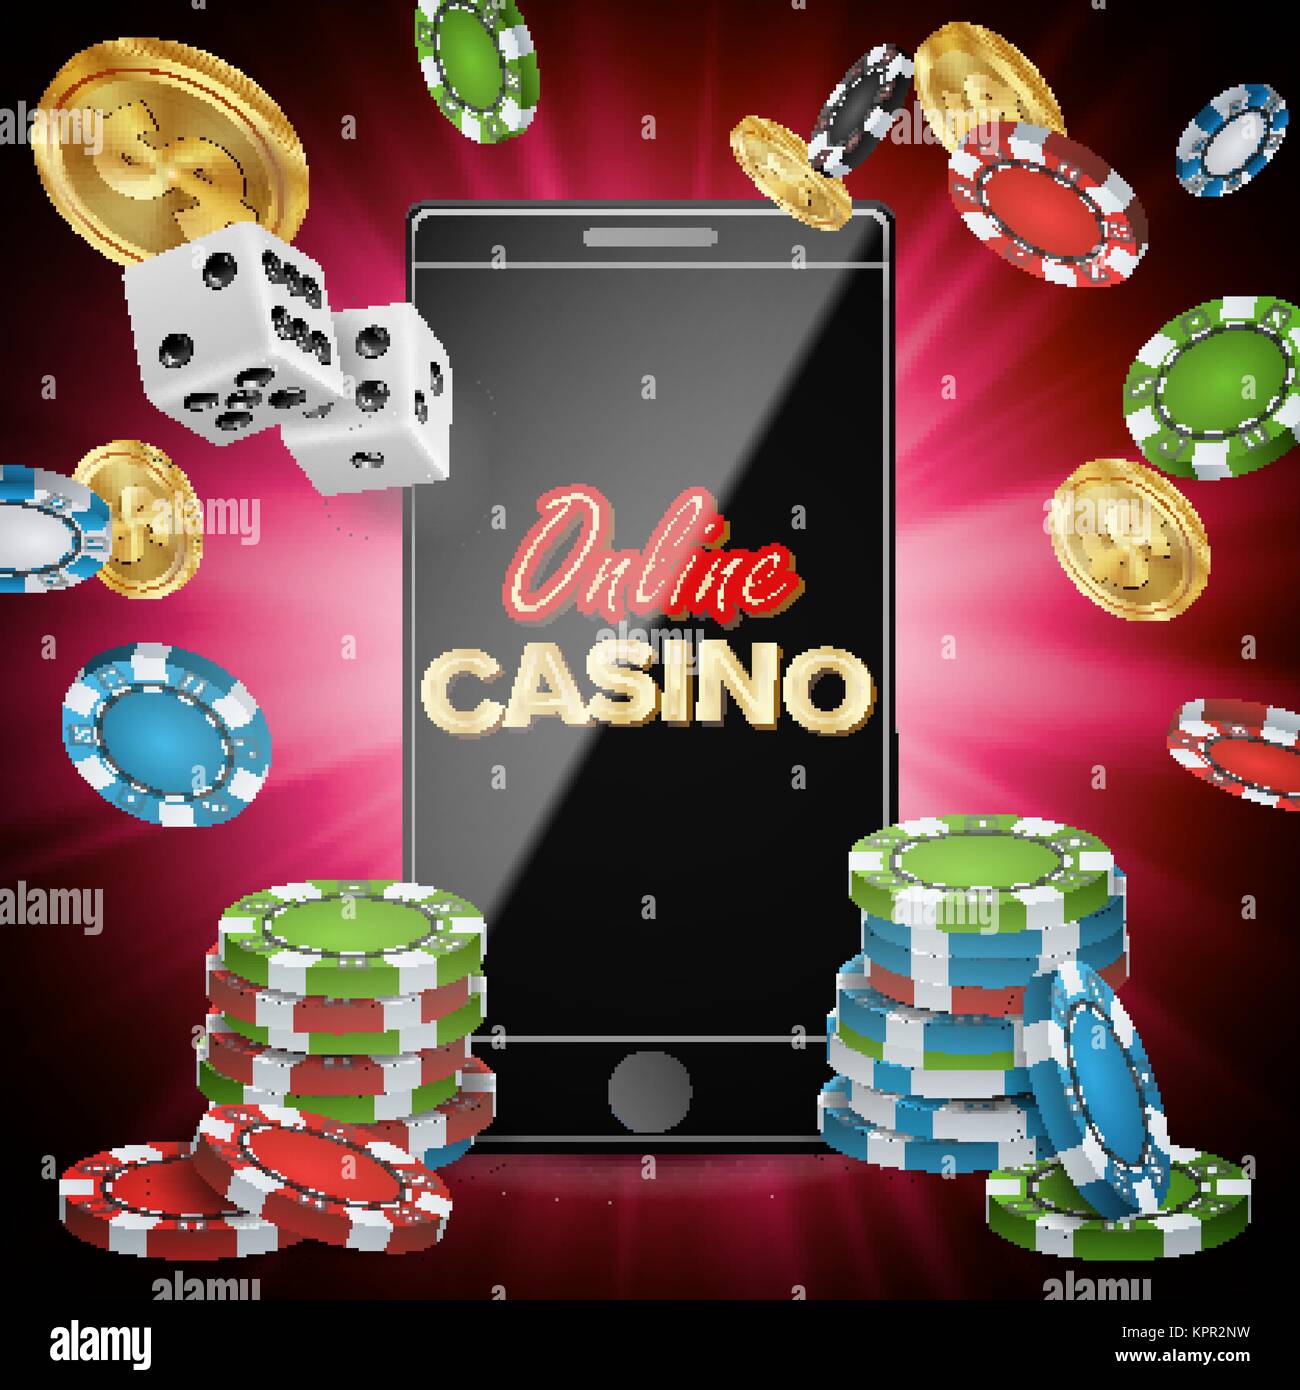 beste Online Casinos Österreich Daten, von denen wir alle lernen können